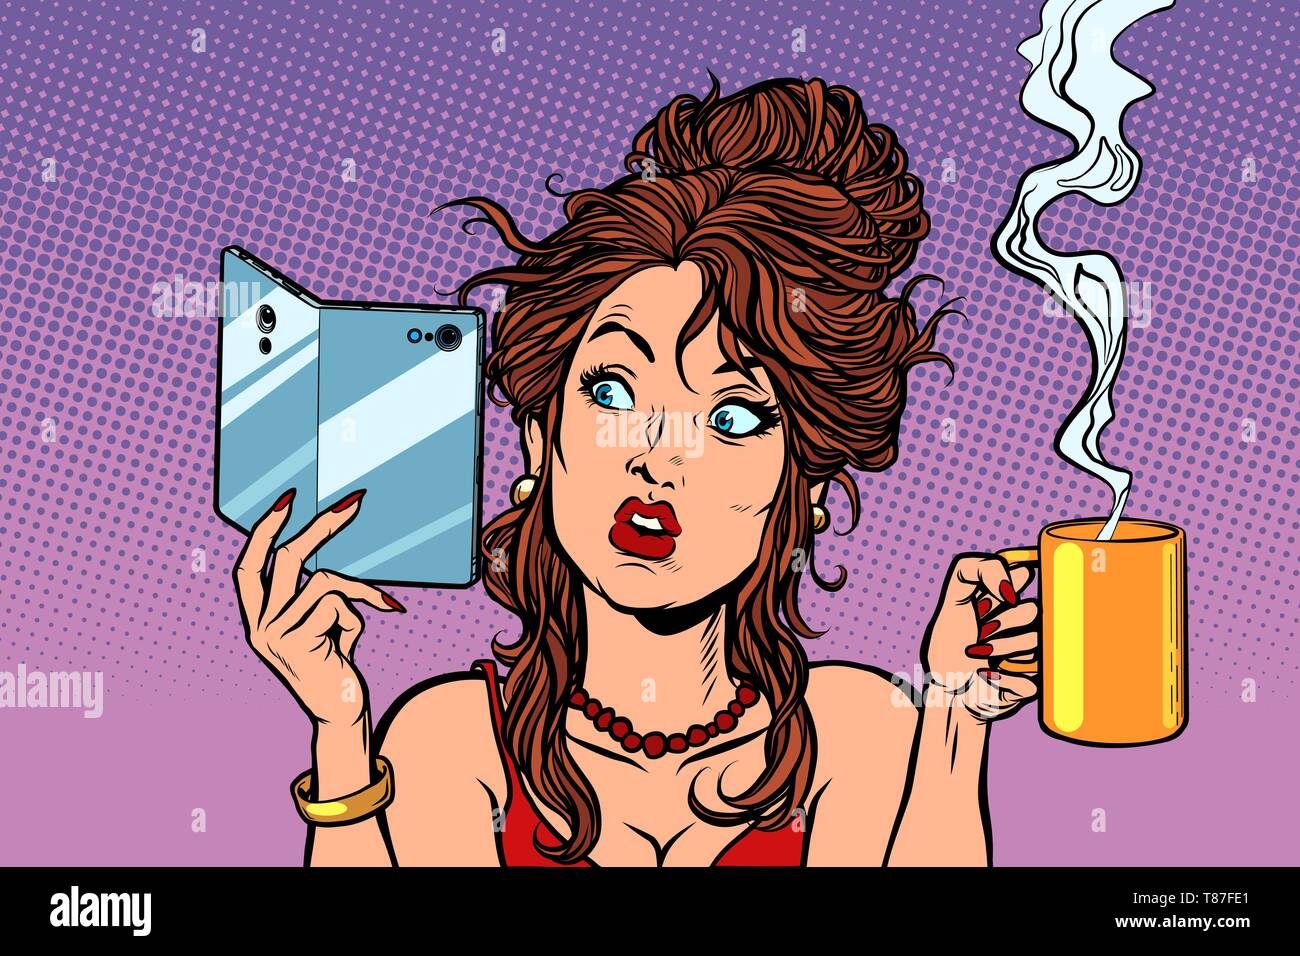 Frau trinkt Kaffee oder Tee. Ein Smartphone mit einer klappbaren flexible Display. Comic cartoon Pop Art retro Zeichnung Abbildung Stock Vektor